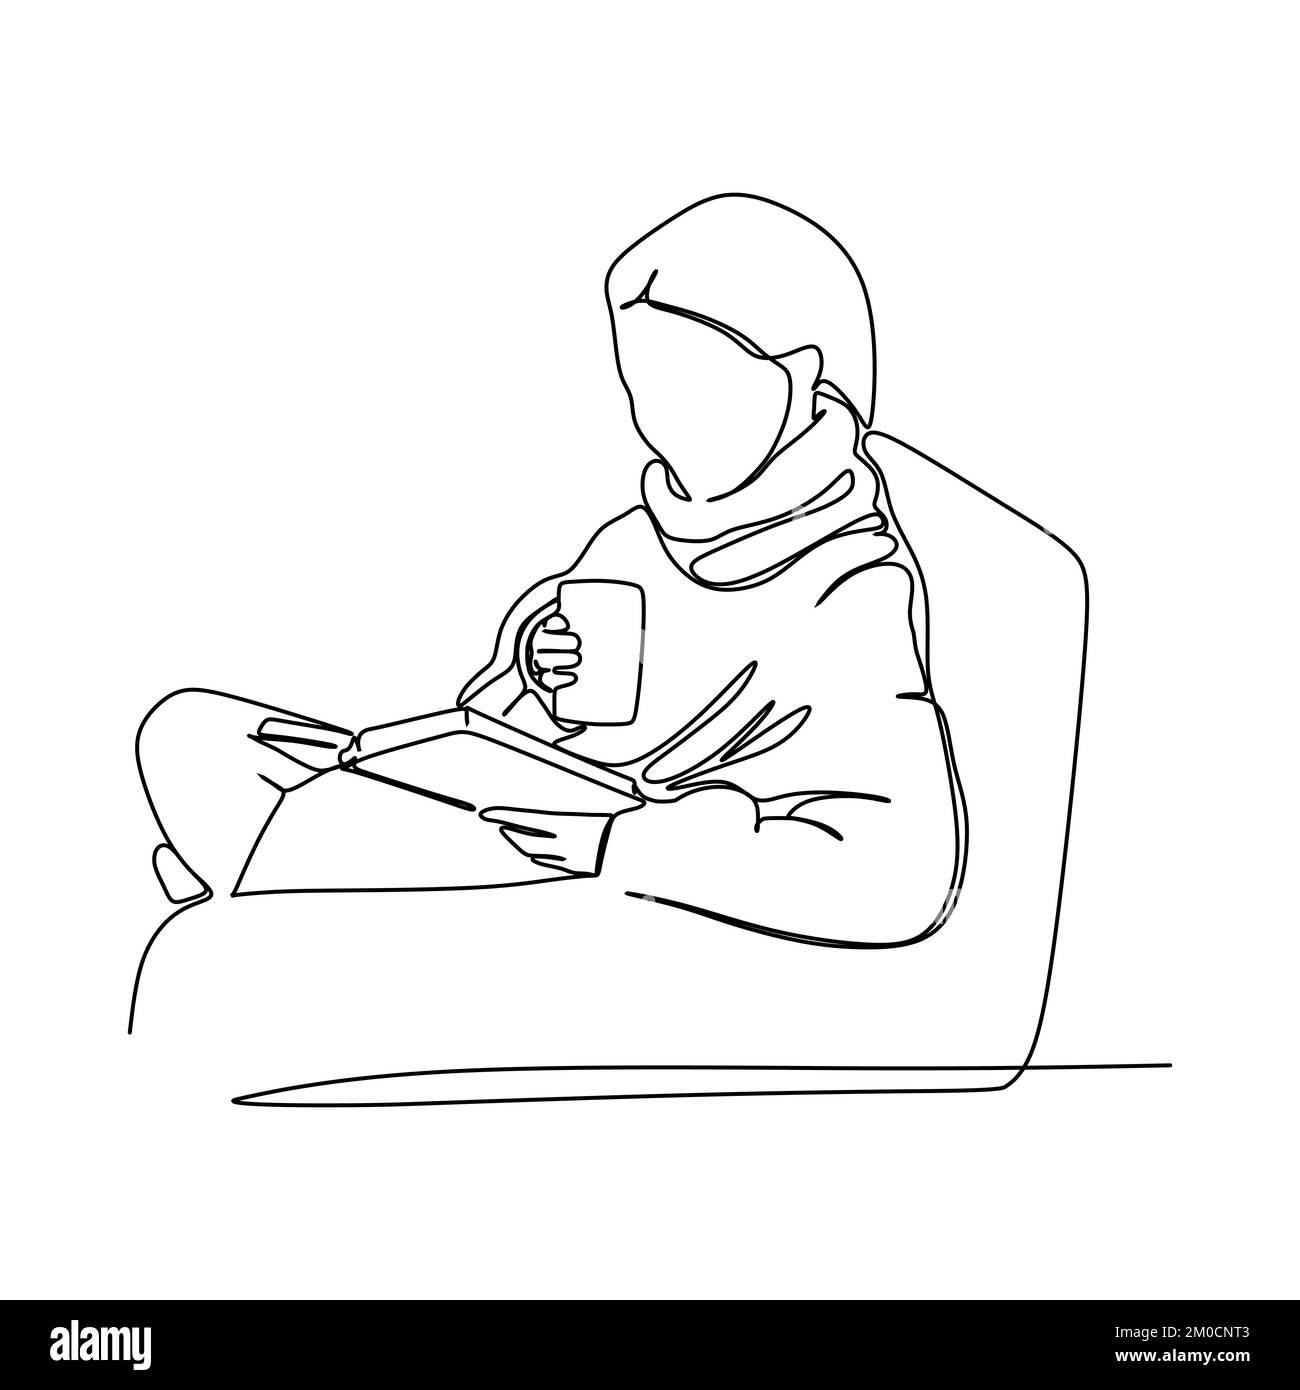 Hygge Lebensstil. Eine Strichzeichnung eines Mädchens, das beim Lesen eine Tasse Kaffee trinkt. Zeichenkonzept für Gemütlichkeit und angenehme Unterhaltung Stock Vektor